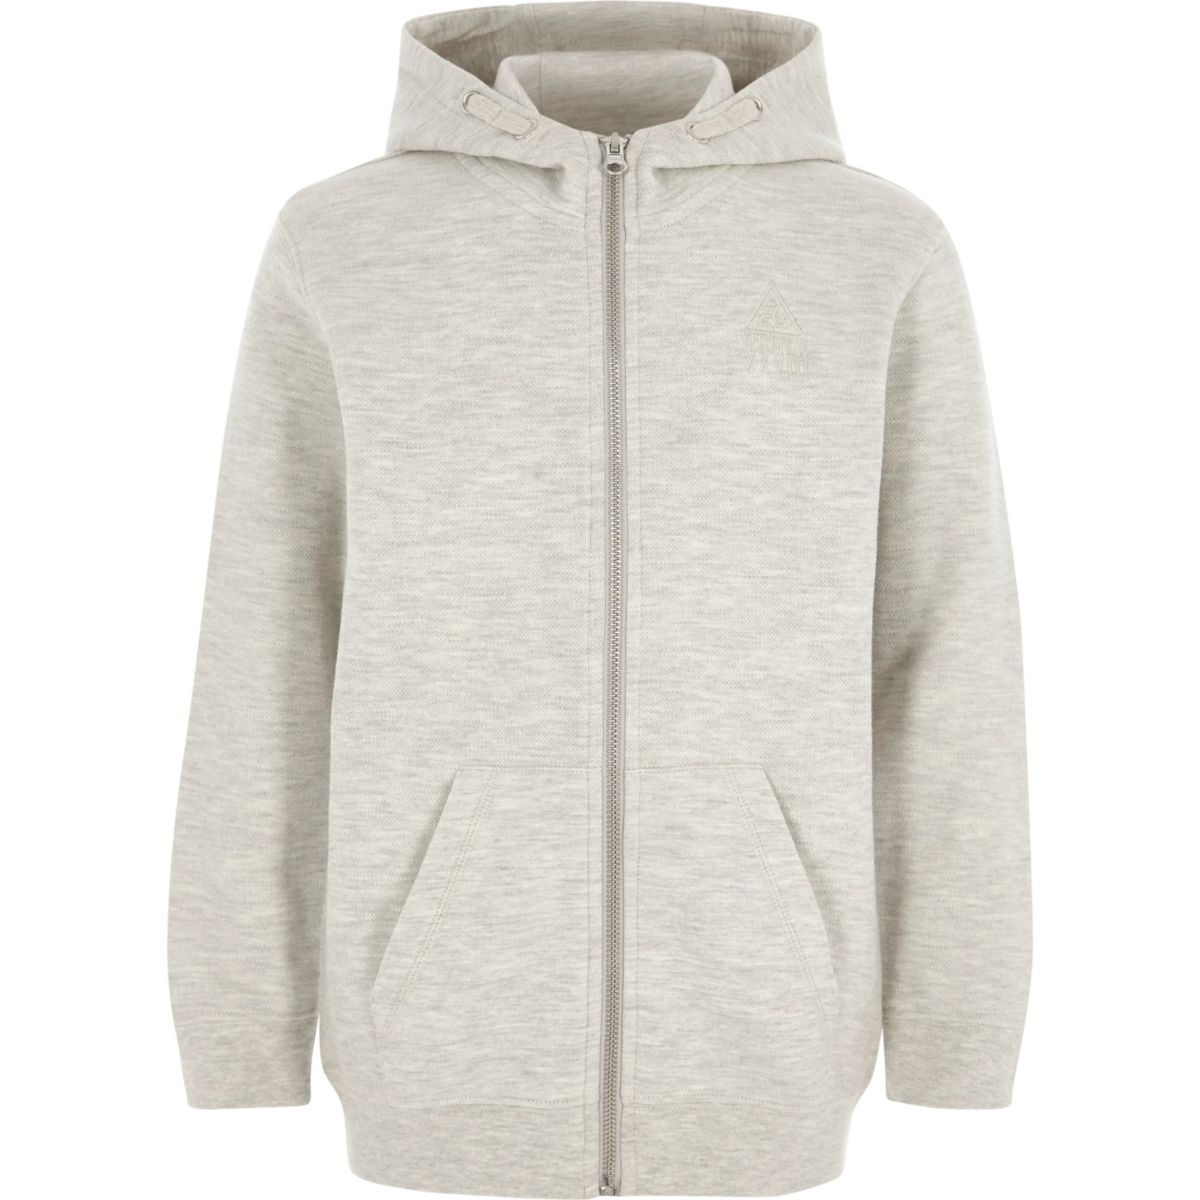 Boys grey zip-up pique hoodie - Hoodies & Sweatshirts - boys